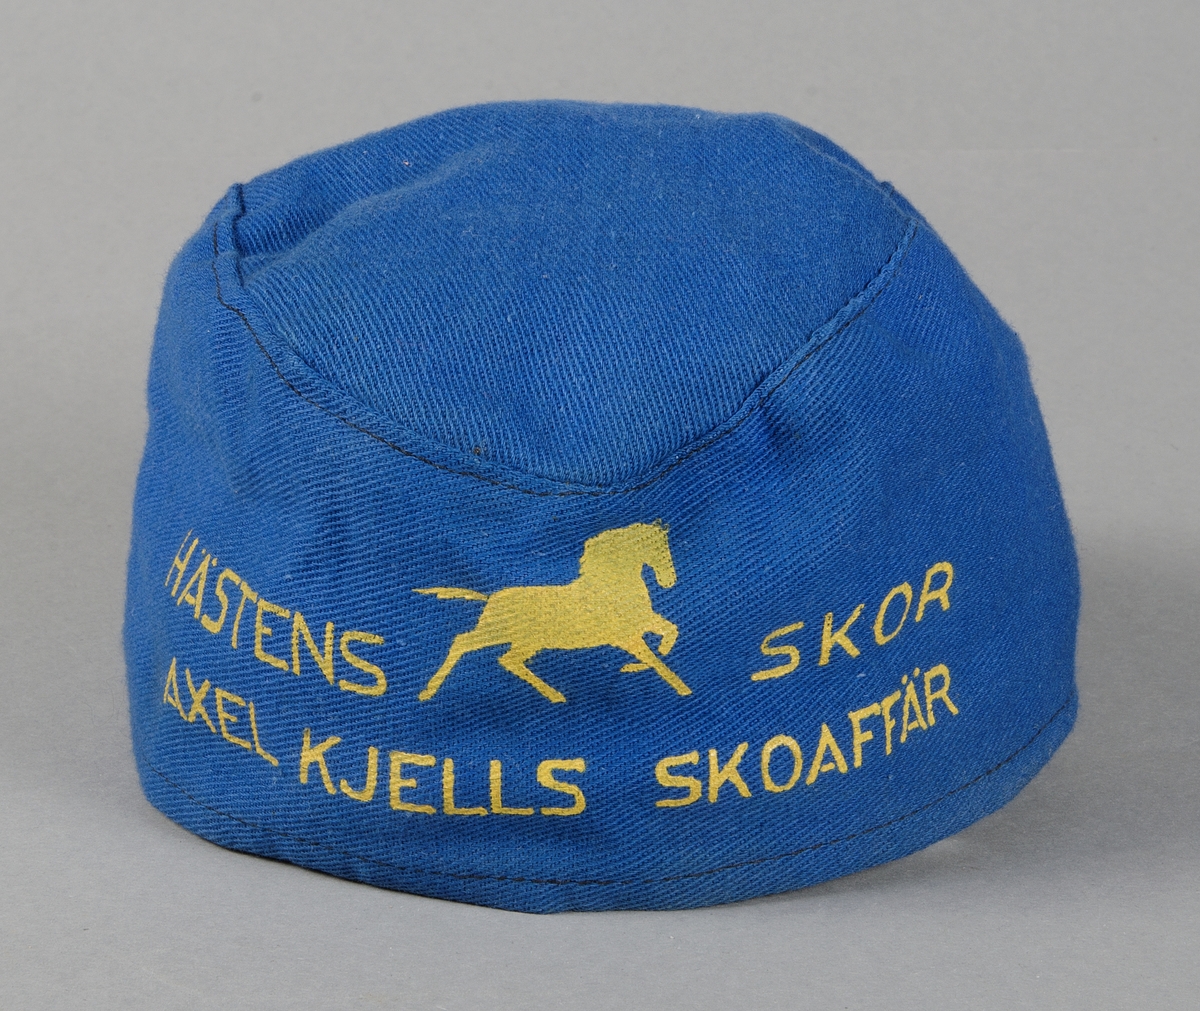 Båtmössa av blått bomullstyg med gul reklamtext: HÄSTENS SKOR, AXEL KJELLS SKOAFFÄR.
